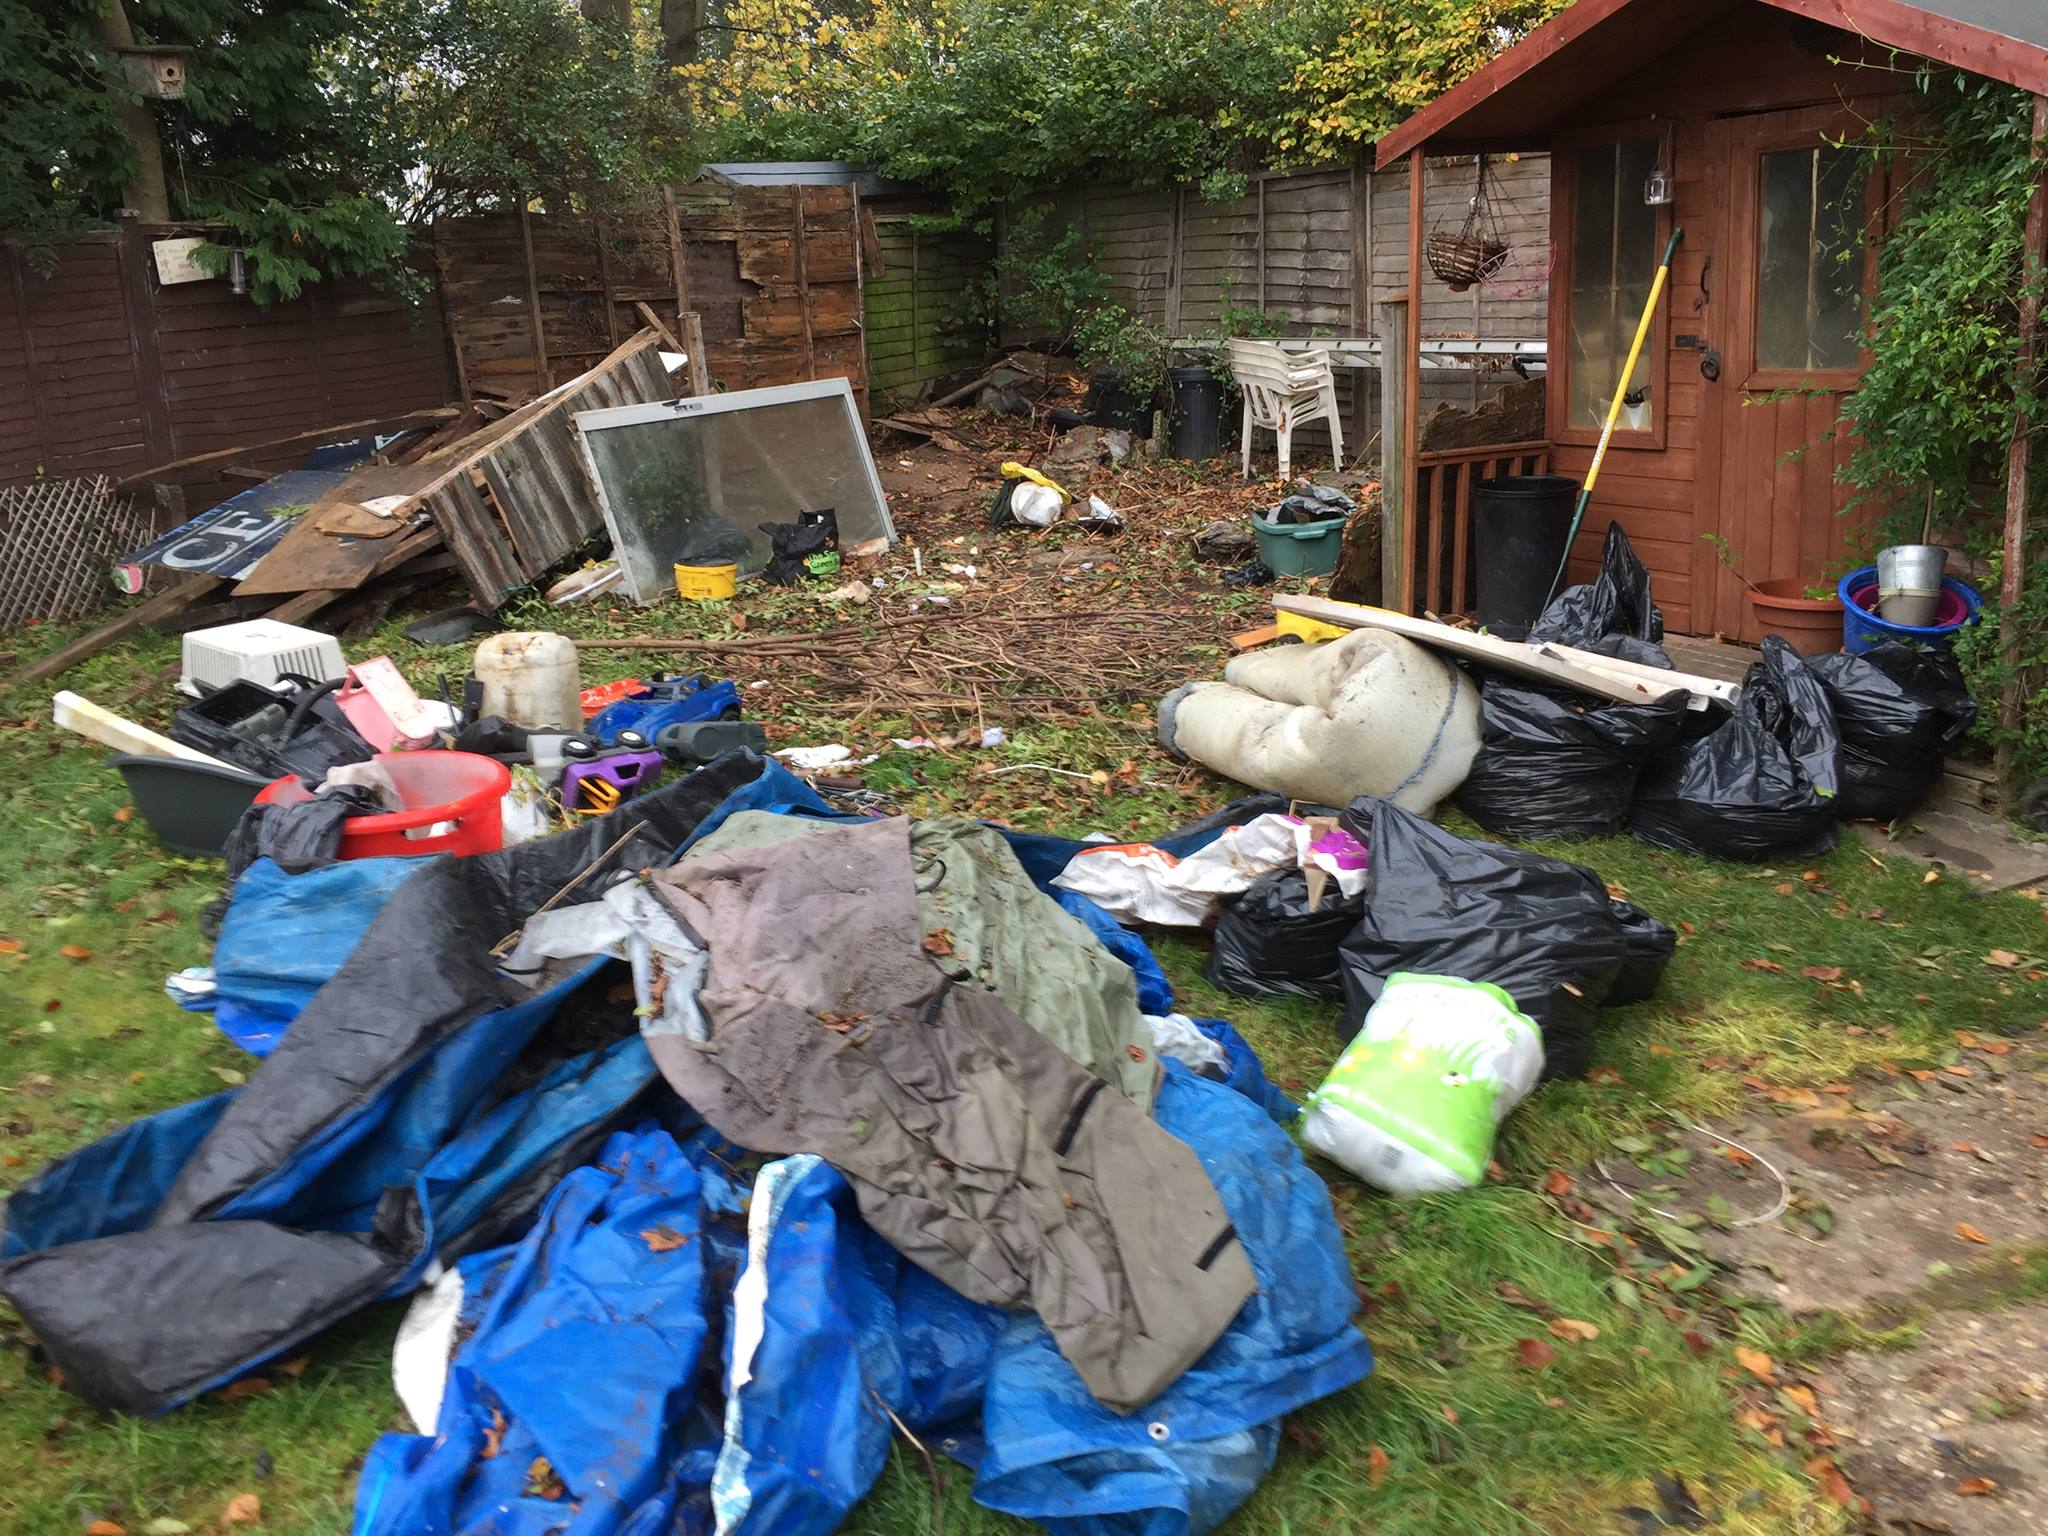 rubbish clearance in garden